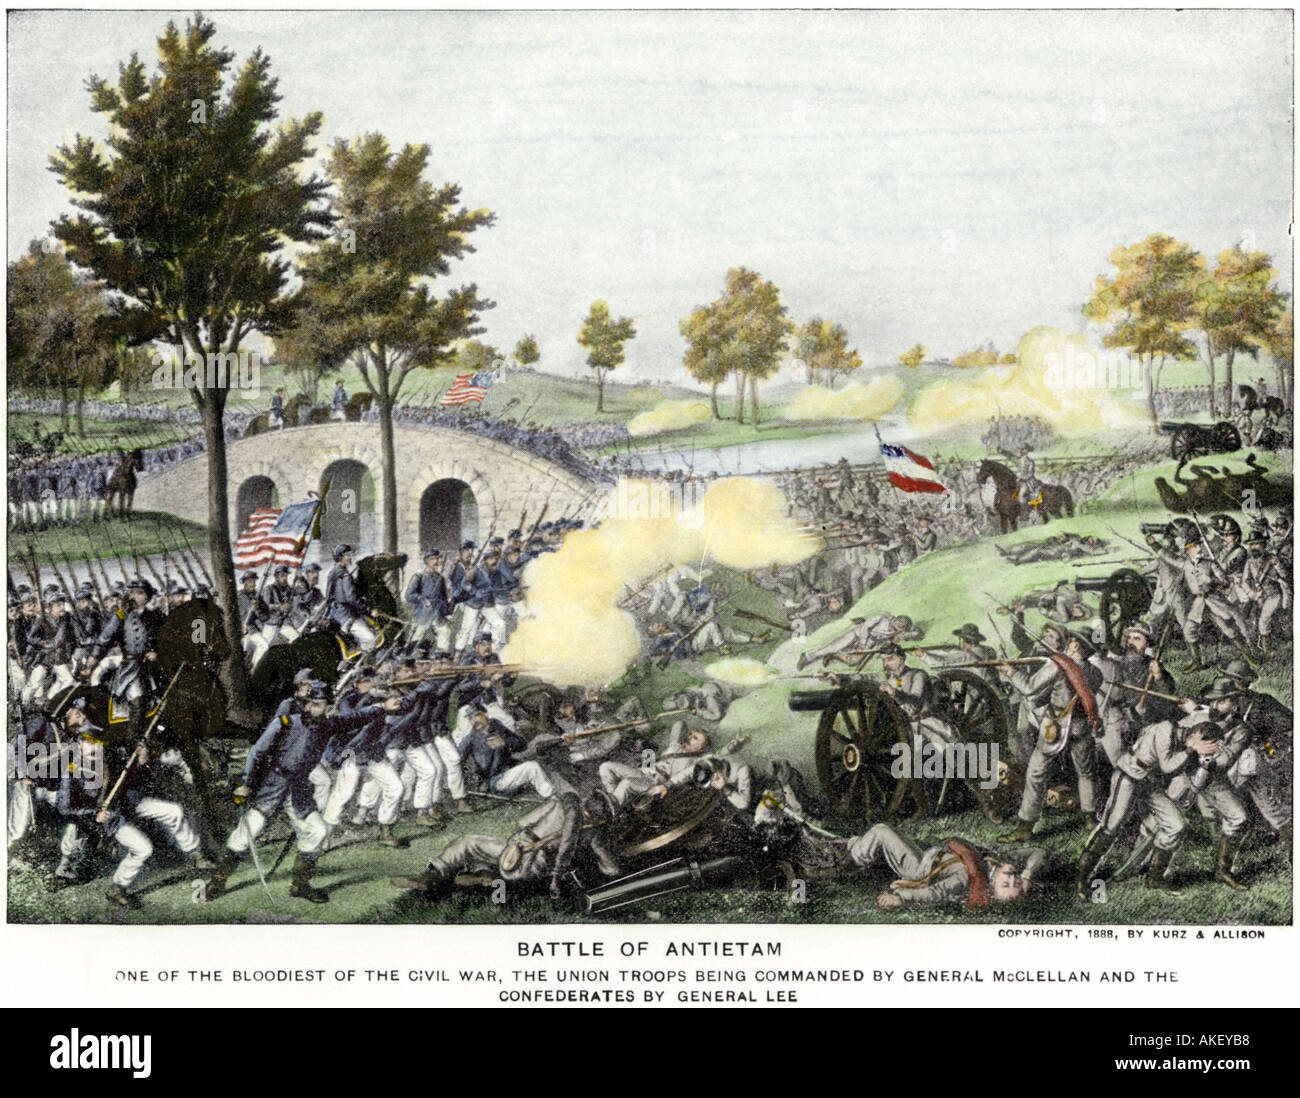 Union Truppen ihren Weg über Burnside Bridge kämpft in der Schlacht von Antietam, US-Bürgerkrieg. Handcolorierte Rasterung von einem Gemälde Stockfoto